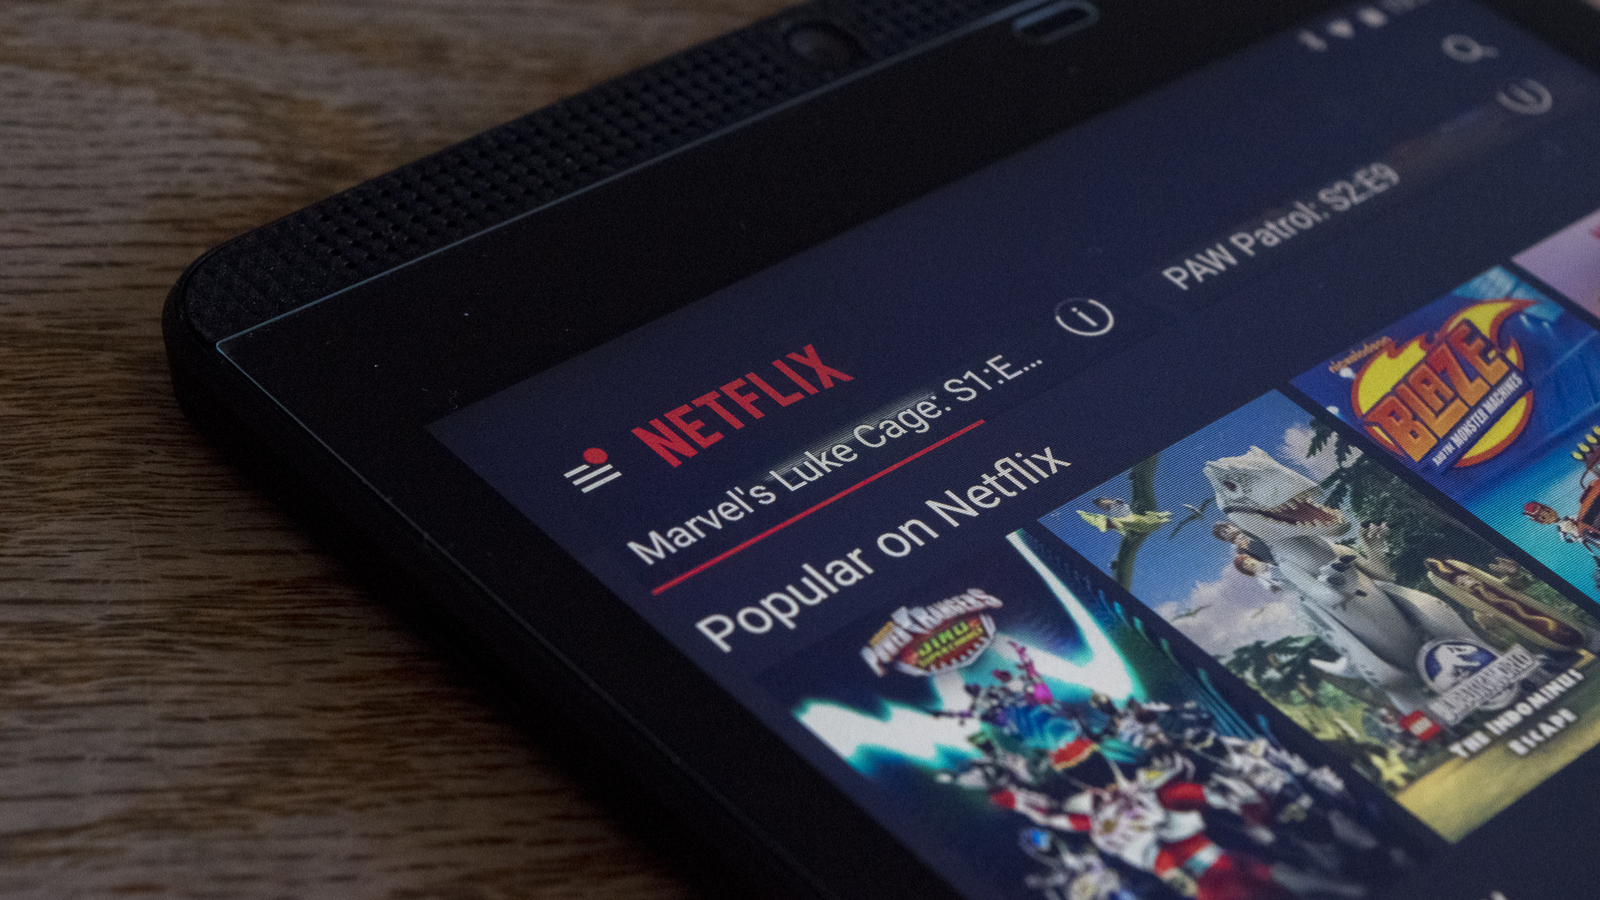 Netflix met en place de nouveaux filtres destinés au contrôle parental